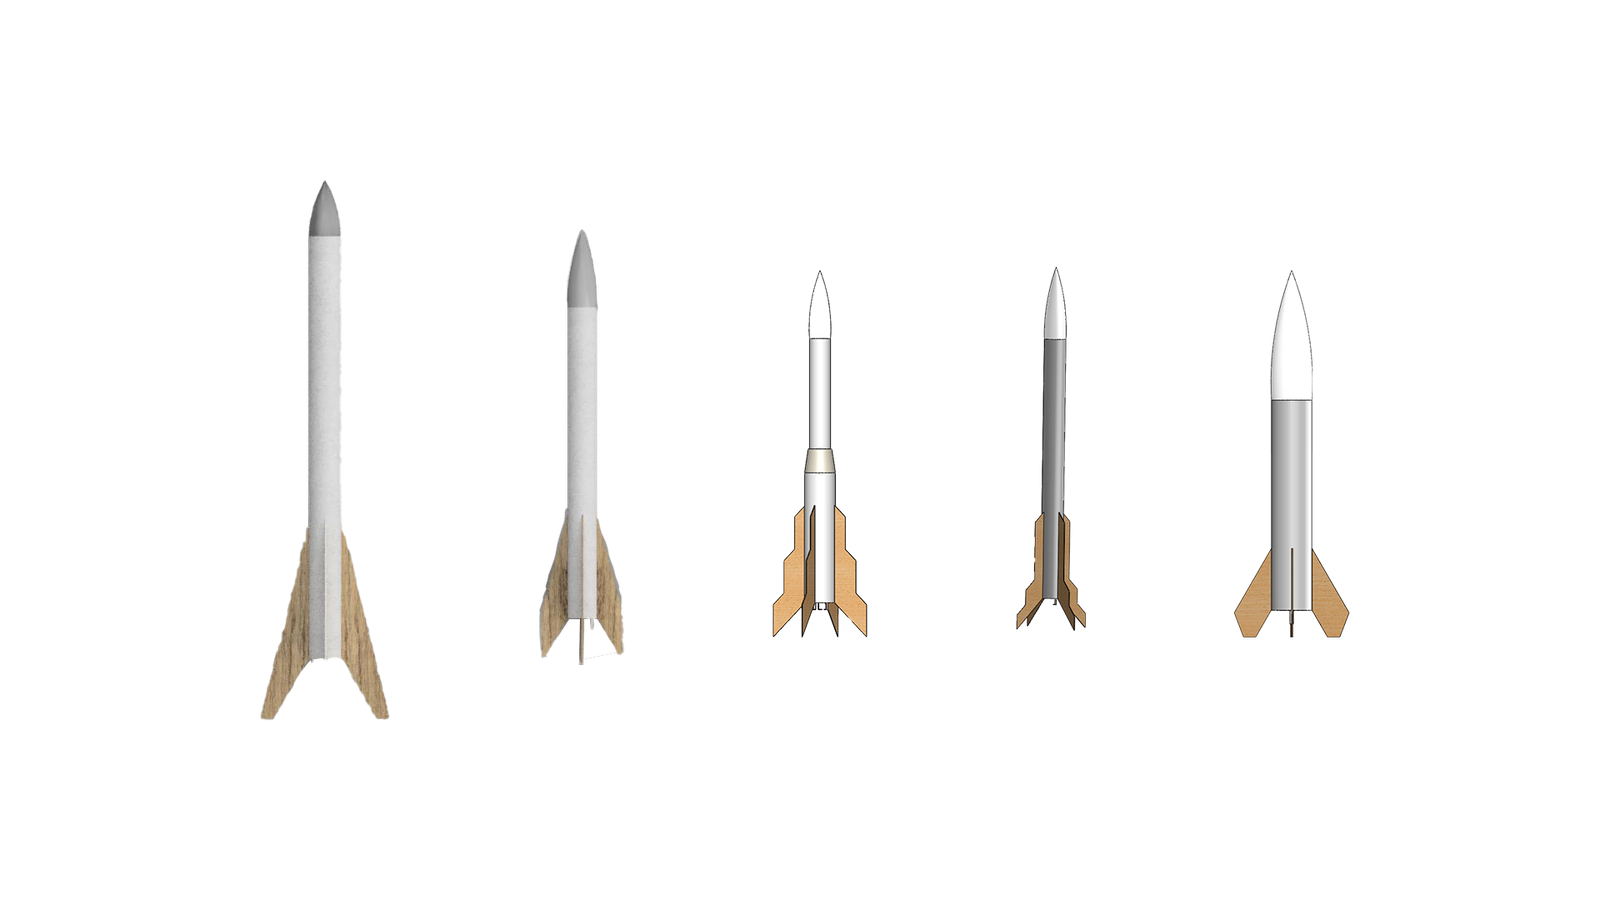 all rockets